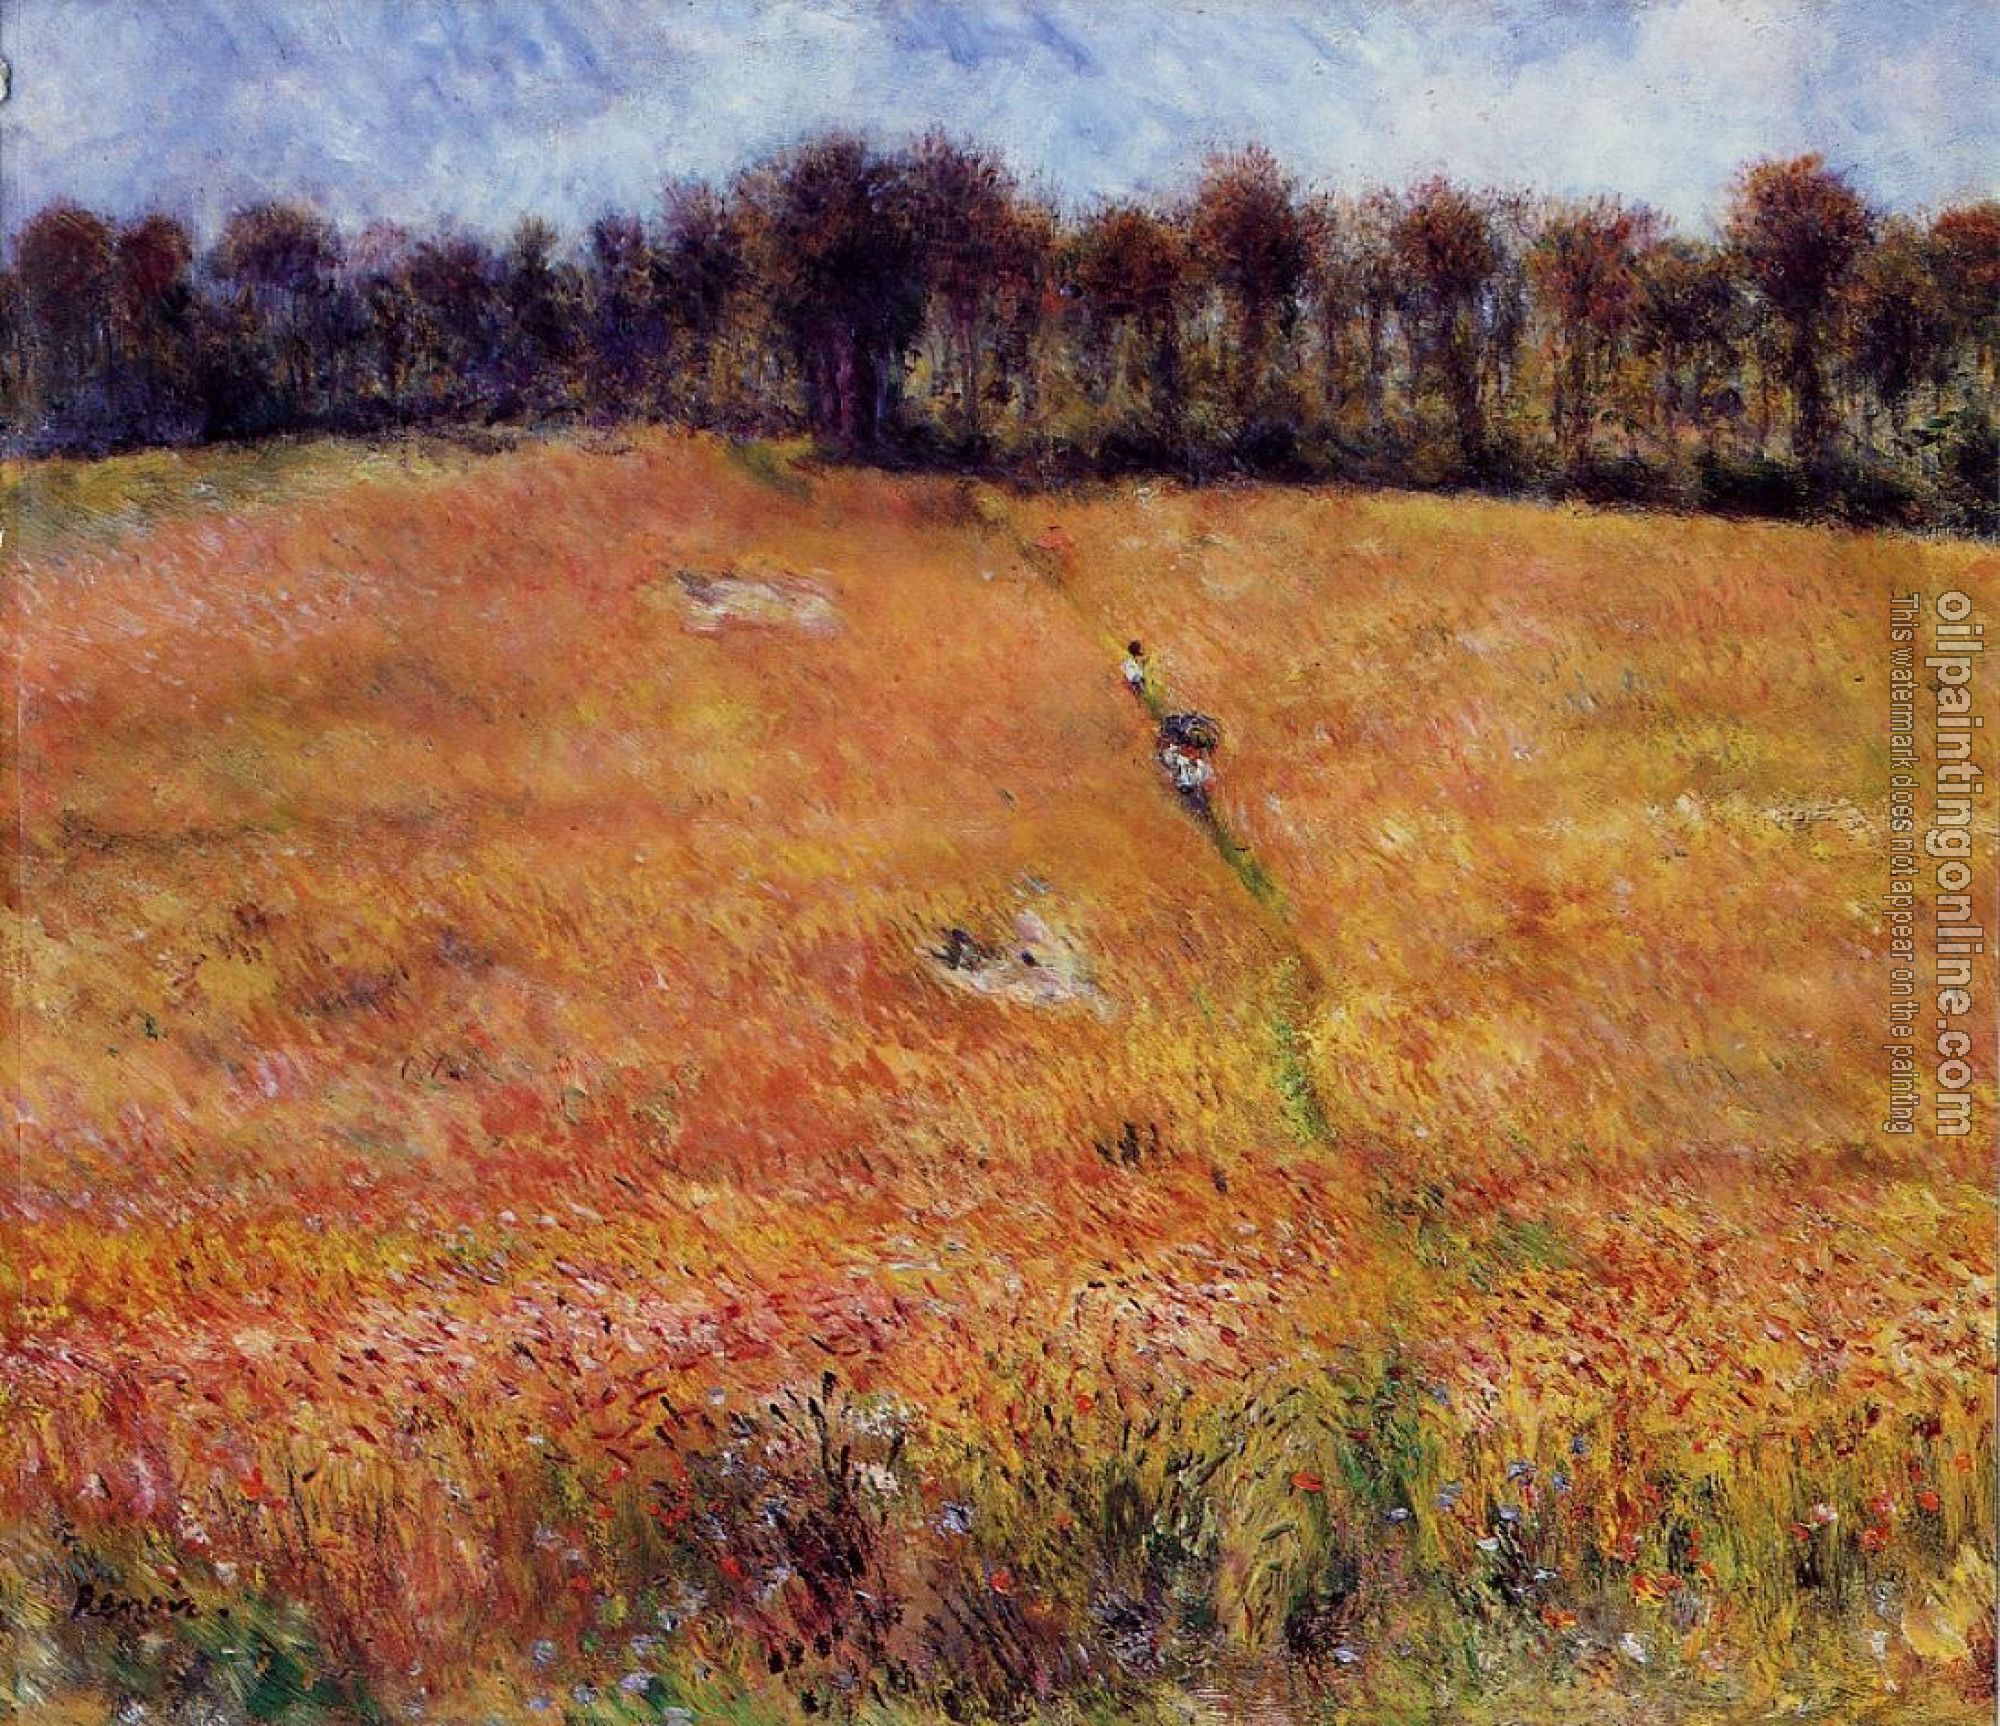 Renoir, Pierre Auguste - Path through the High Grass